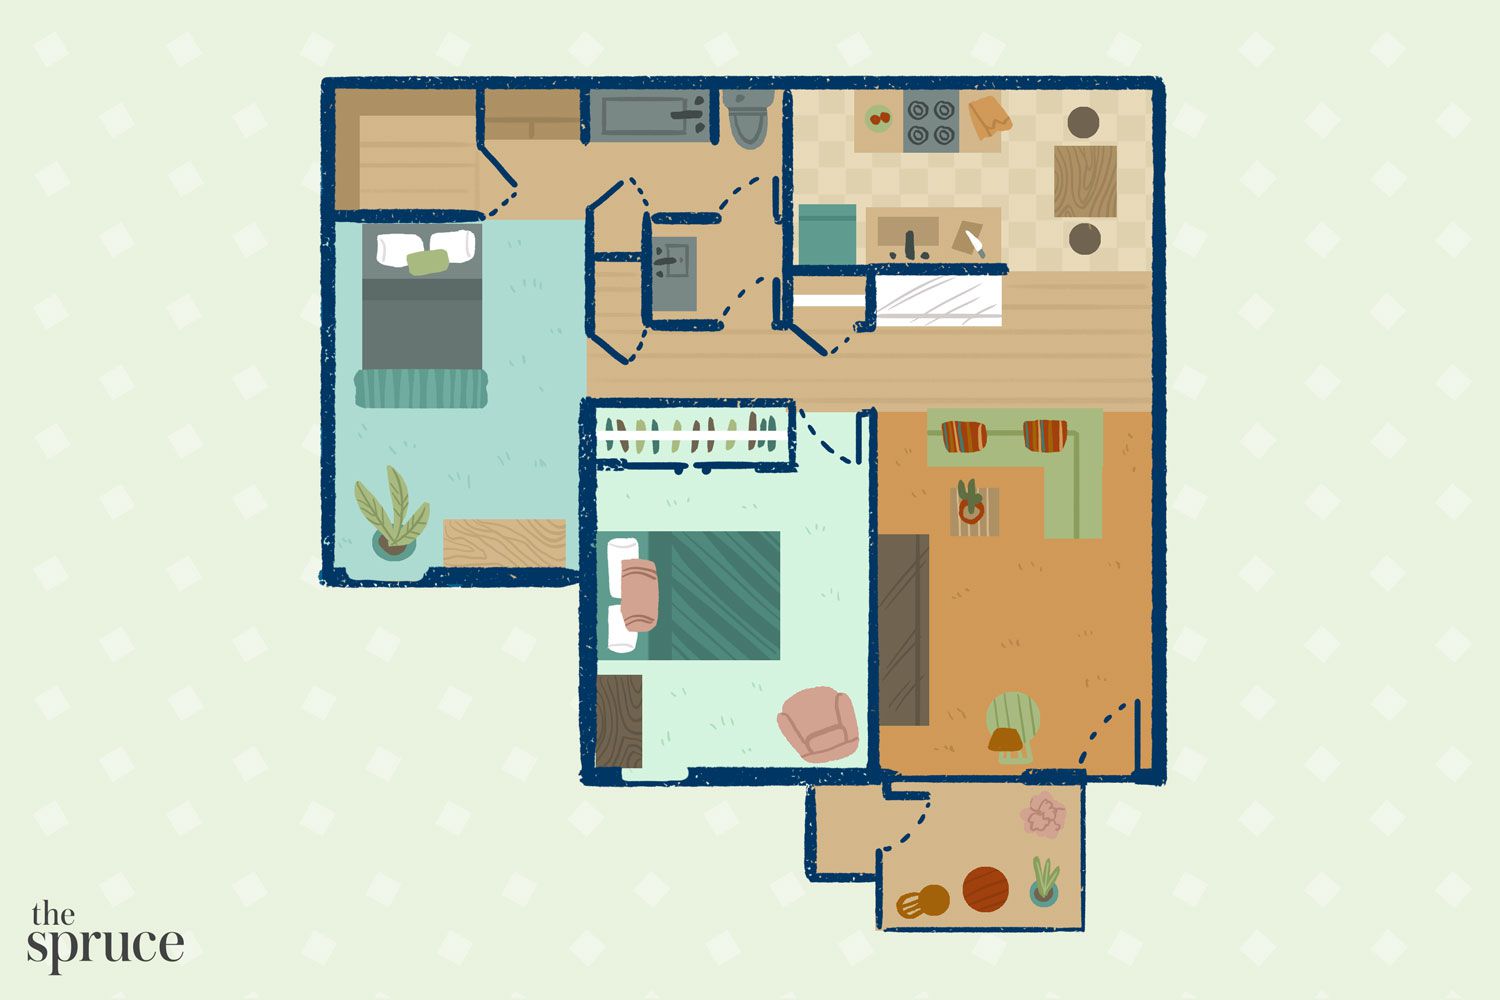 kleine wohnzimmereinrichtung illustration